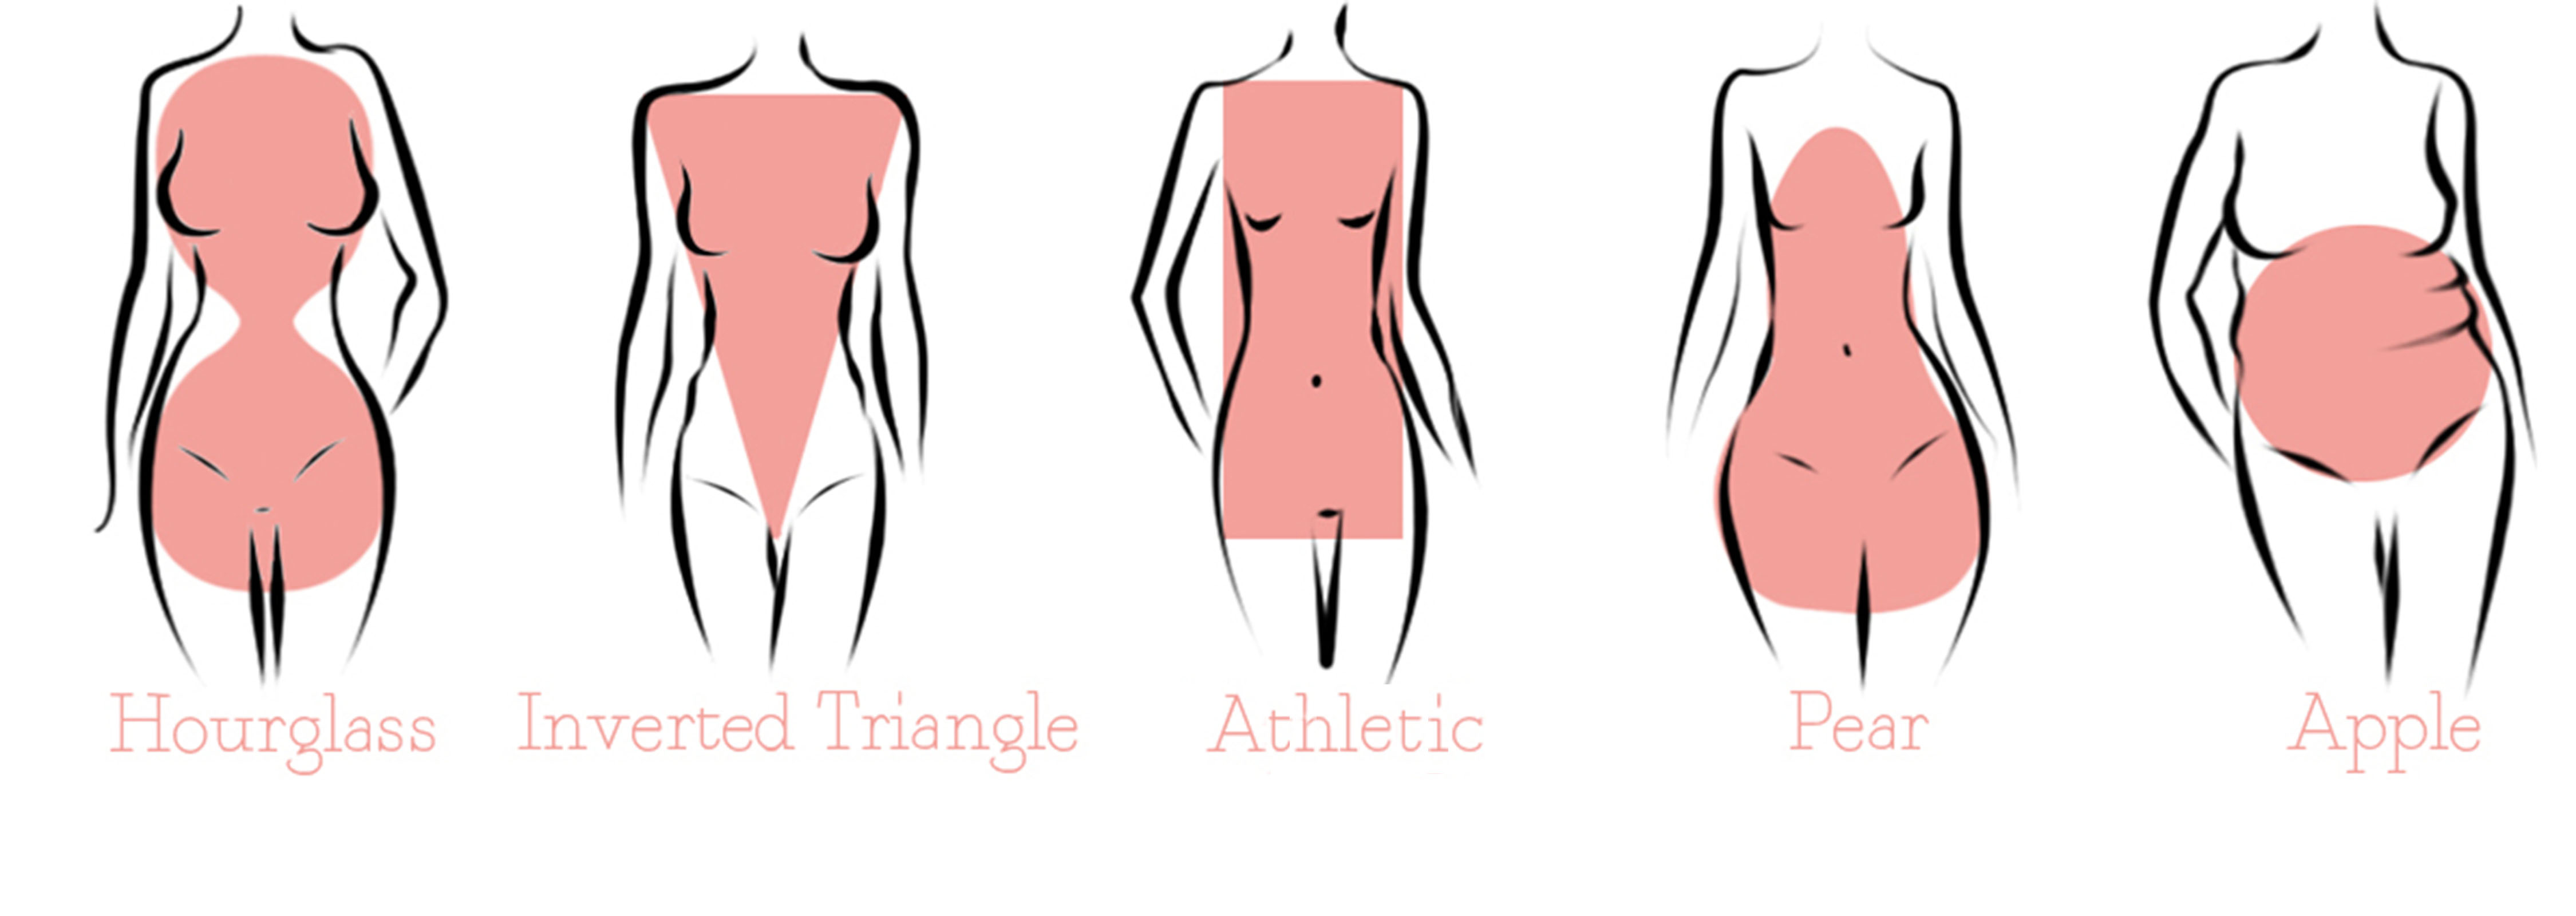 Body Shapes - Slender  Body types women, Body shapes, Types of body shapes